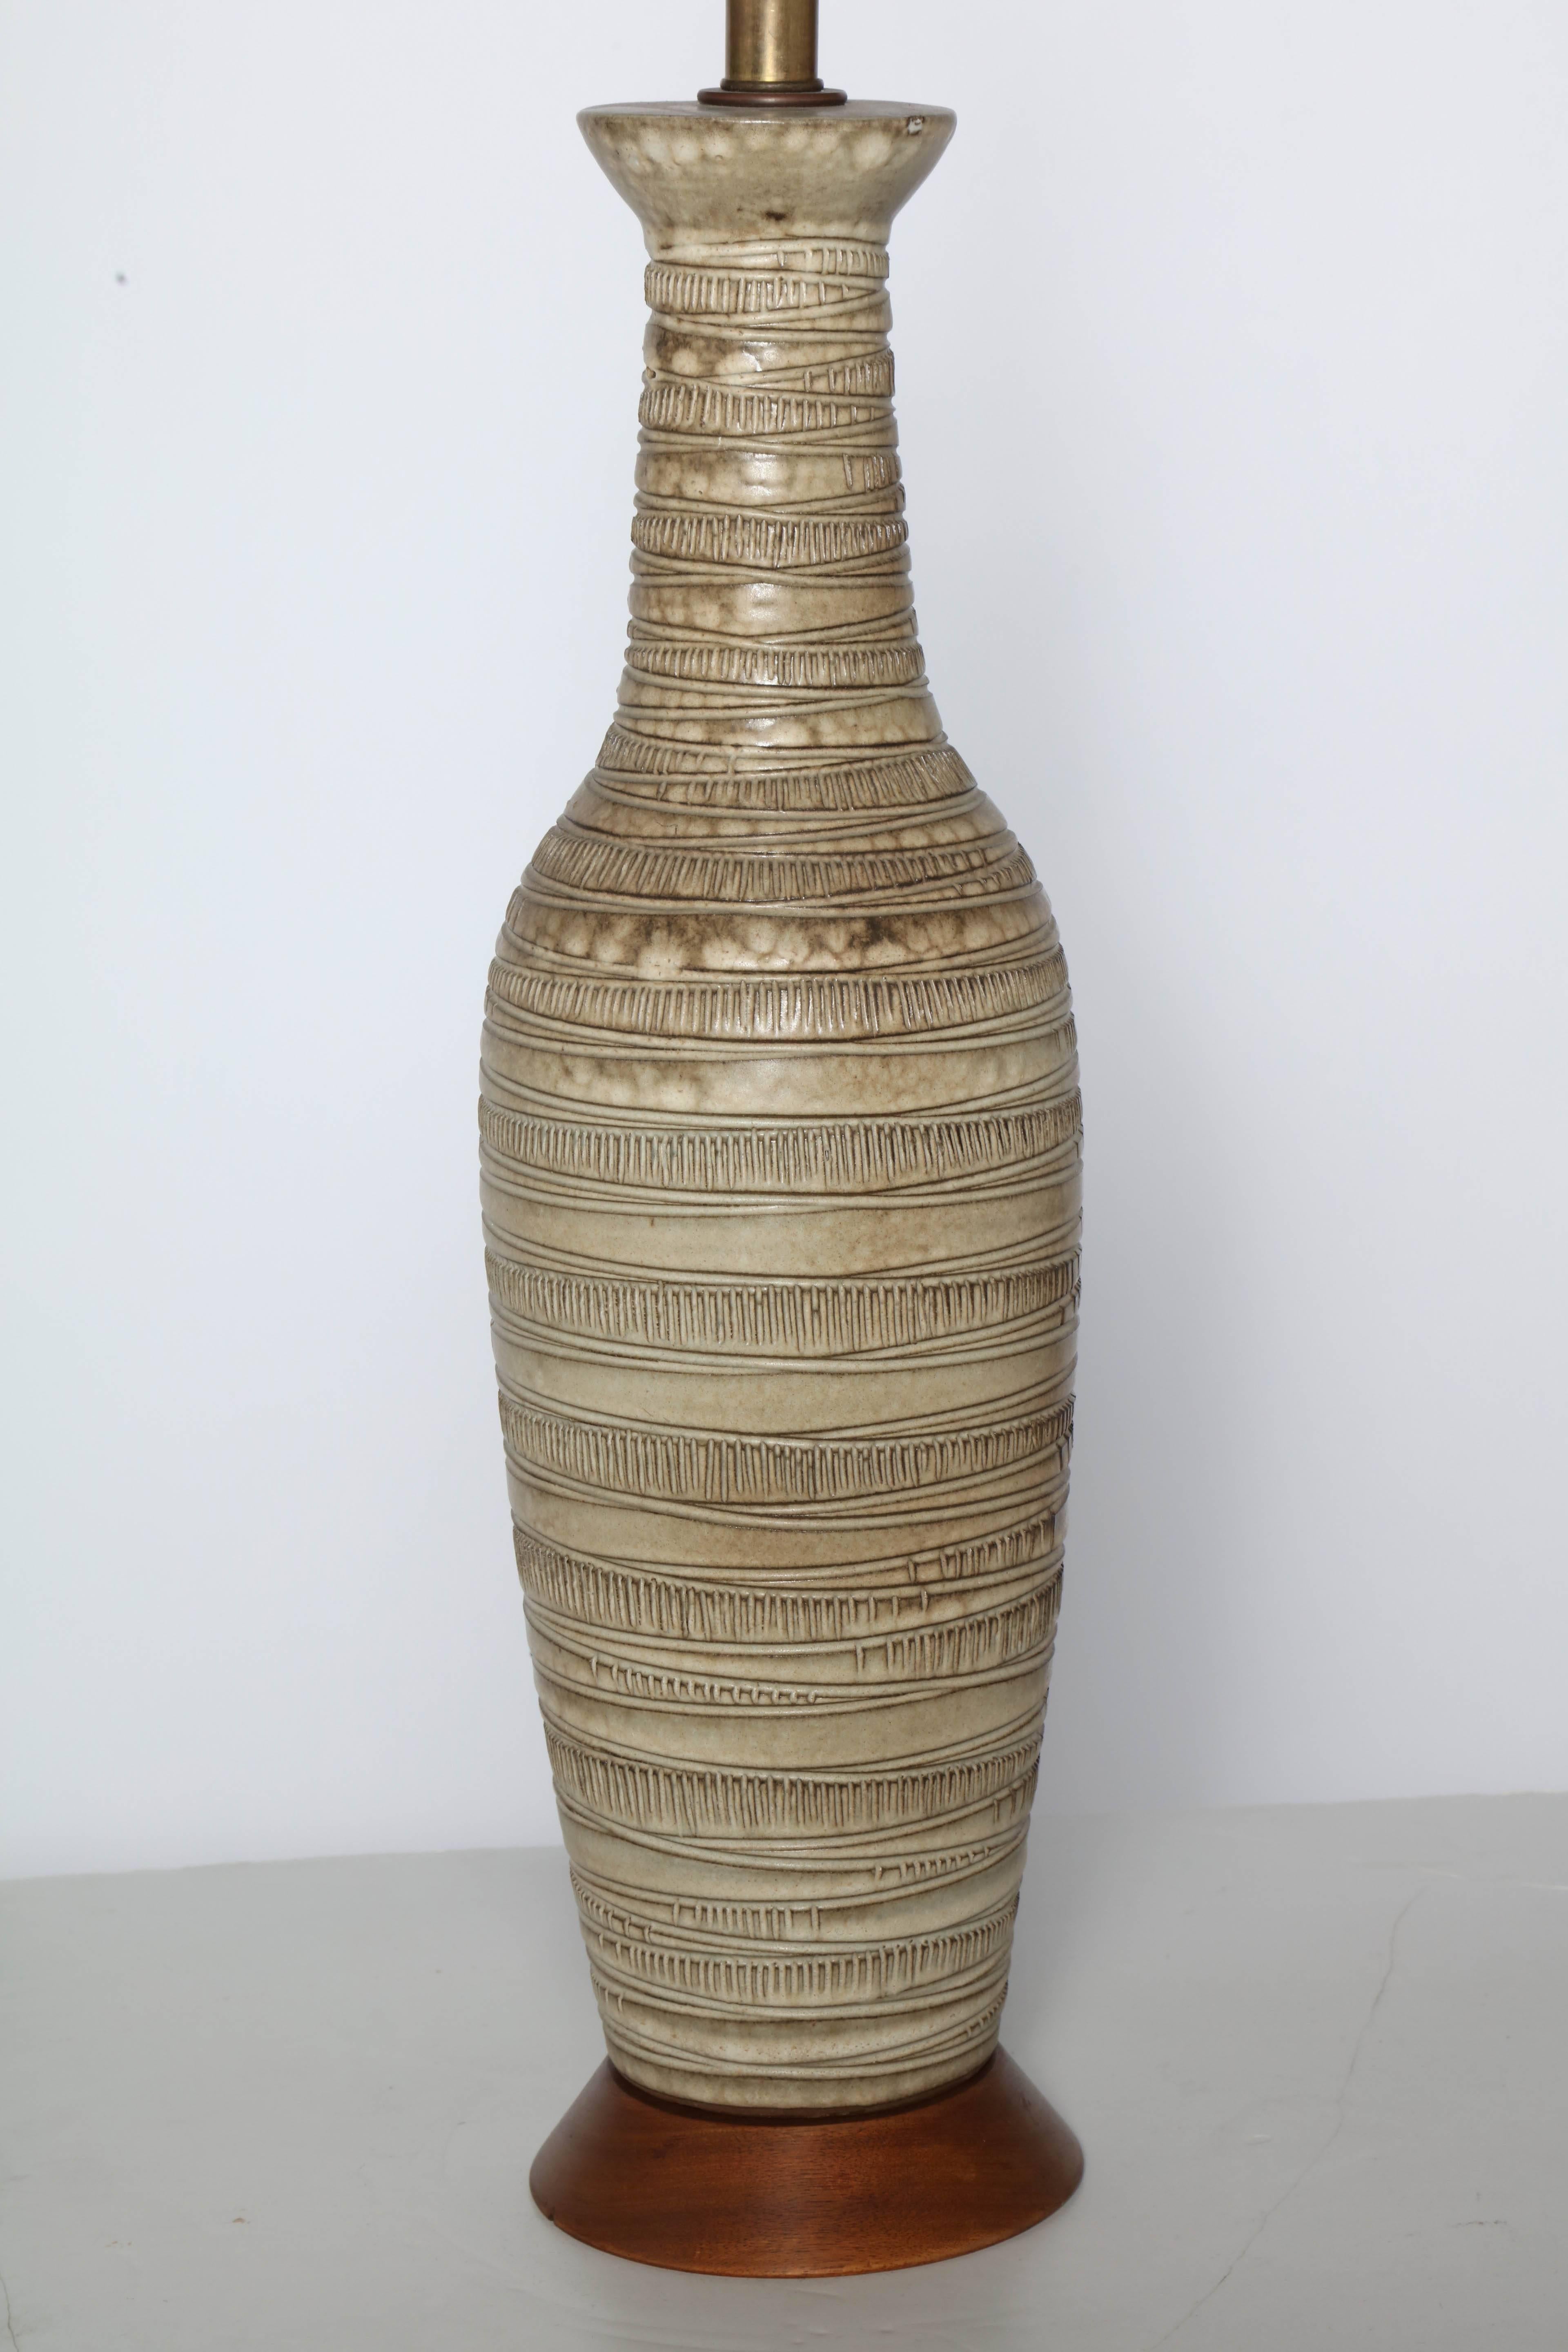 Lampe de table en céramique émaillée sgraffite fabriquée à la main par Lee Rosen pour Design/One. La forme classique d'une bouteille en poterie jetée au tour est une palette de terre naturelle en beige, taupe, coquille d'œuf et brun, avec une